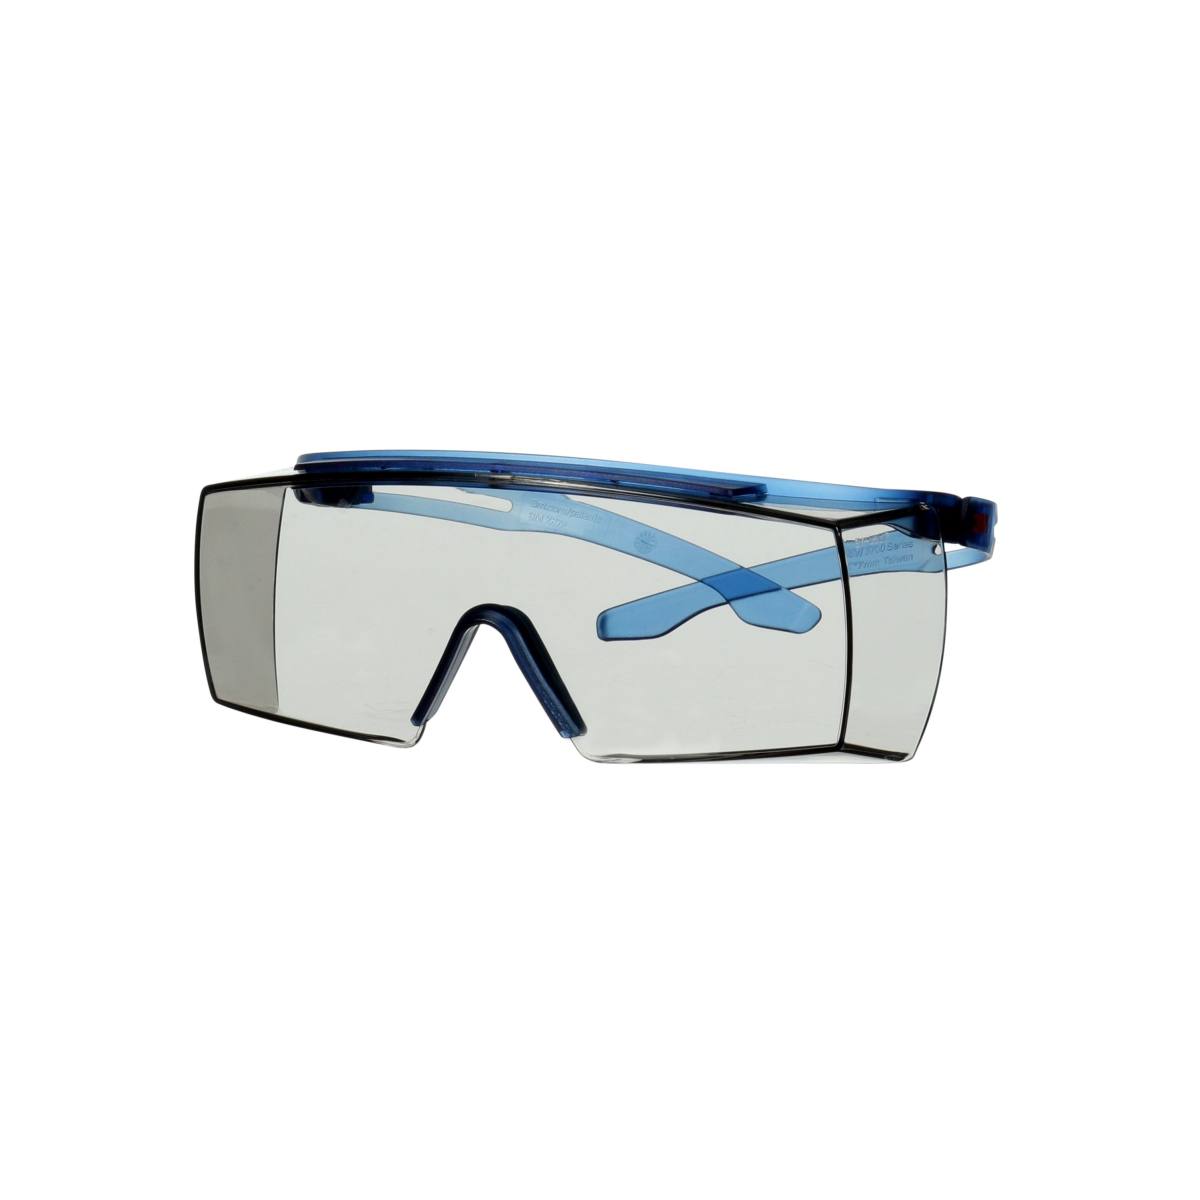 3M SecureFit 3700 Überbrille, blaue Bügel, Scotchgard Anti-Beschlag Beschichtung (K&N), graue Scheibe für Innen-/Außenbereich, SF3707SGAF-BLU-EU